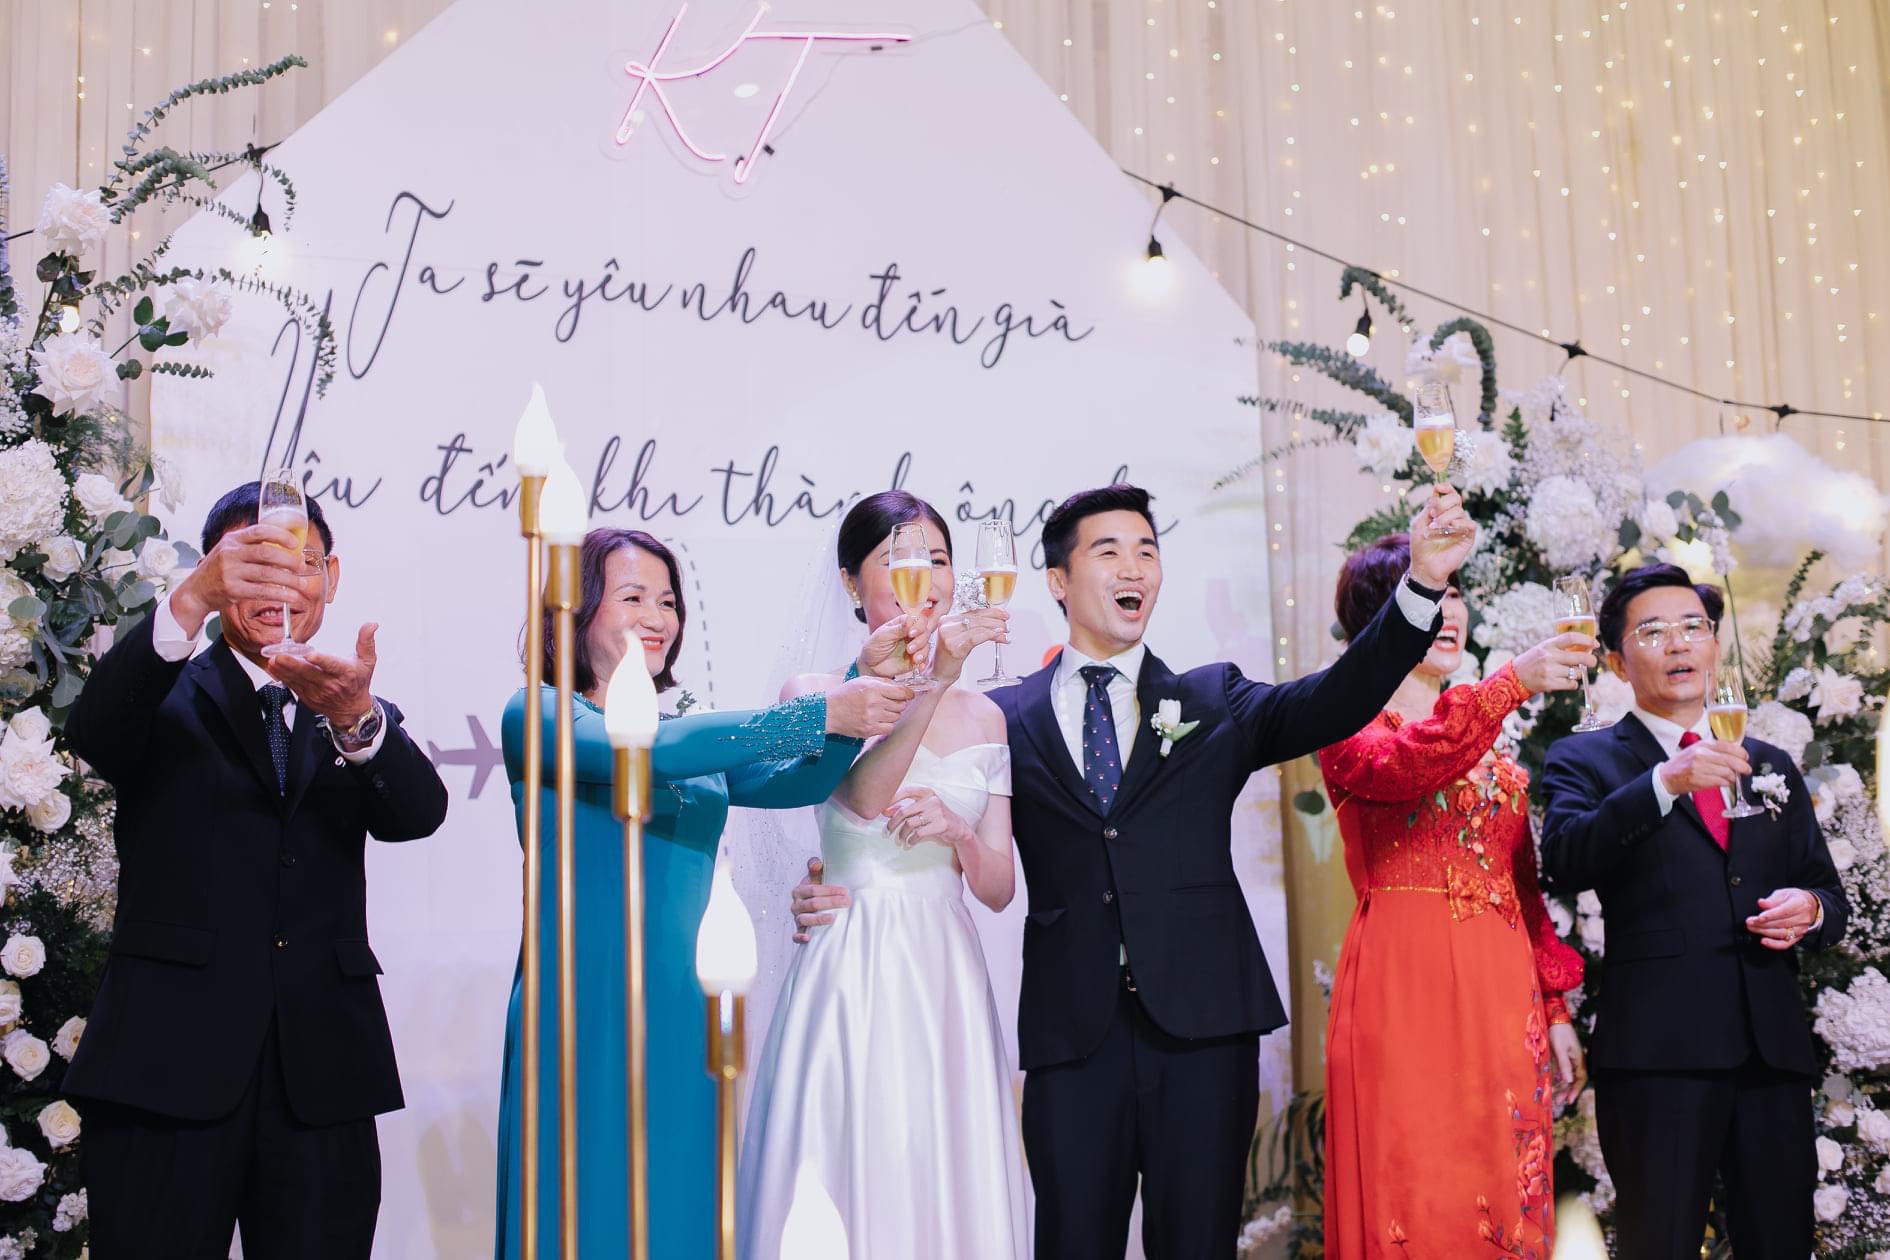 Thanh Hằng và chồng nhạc trưởng xuất hiện sau tiệc cưới xa hoa gây chú ý |  Báo Dân trí